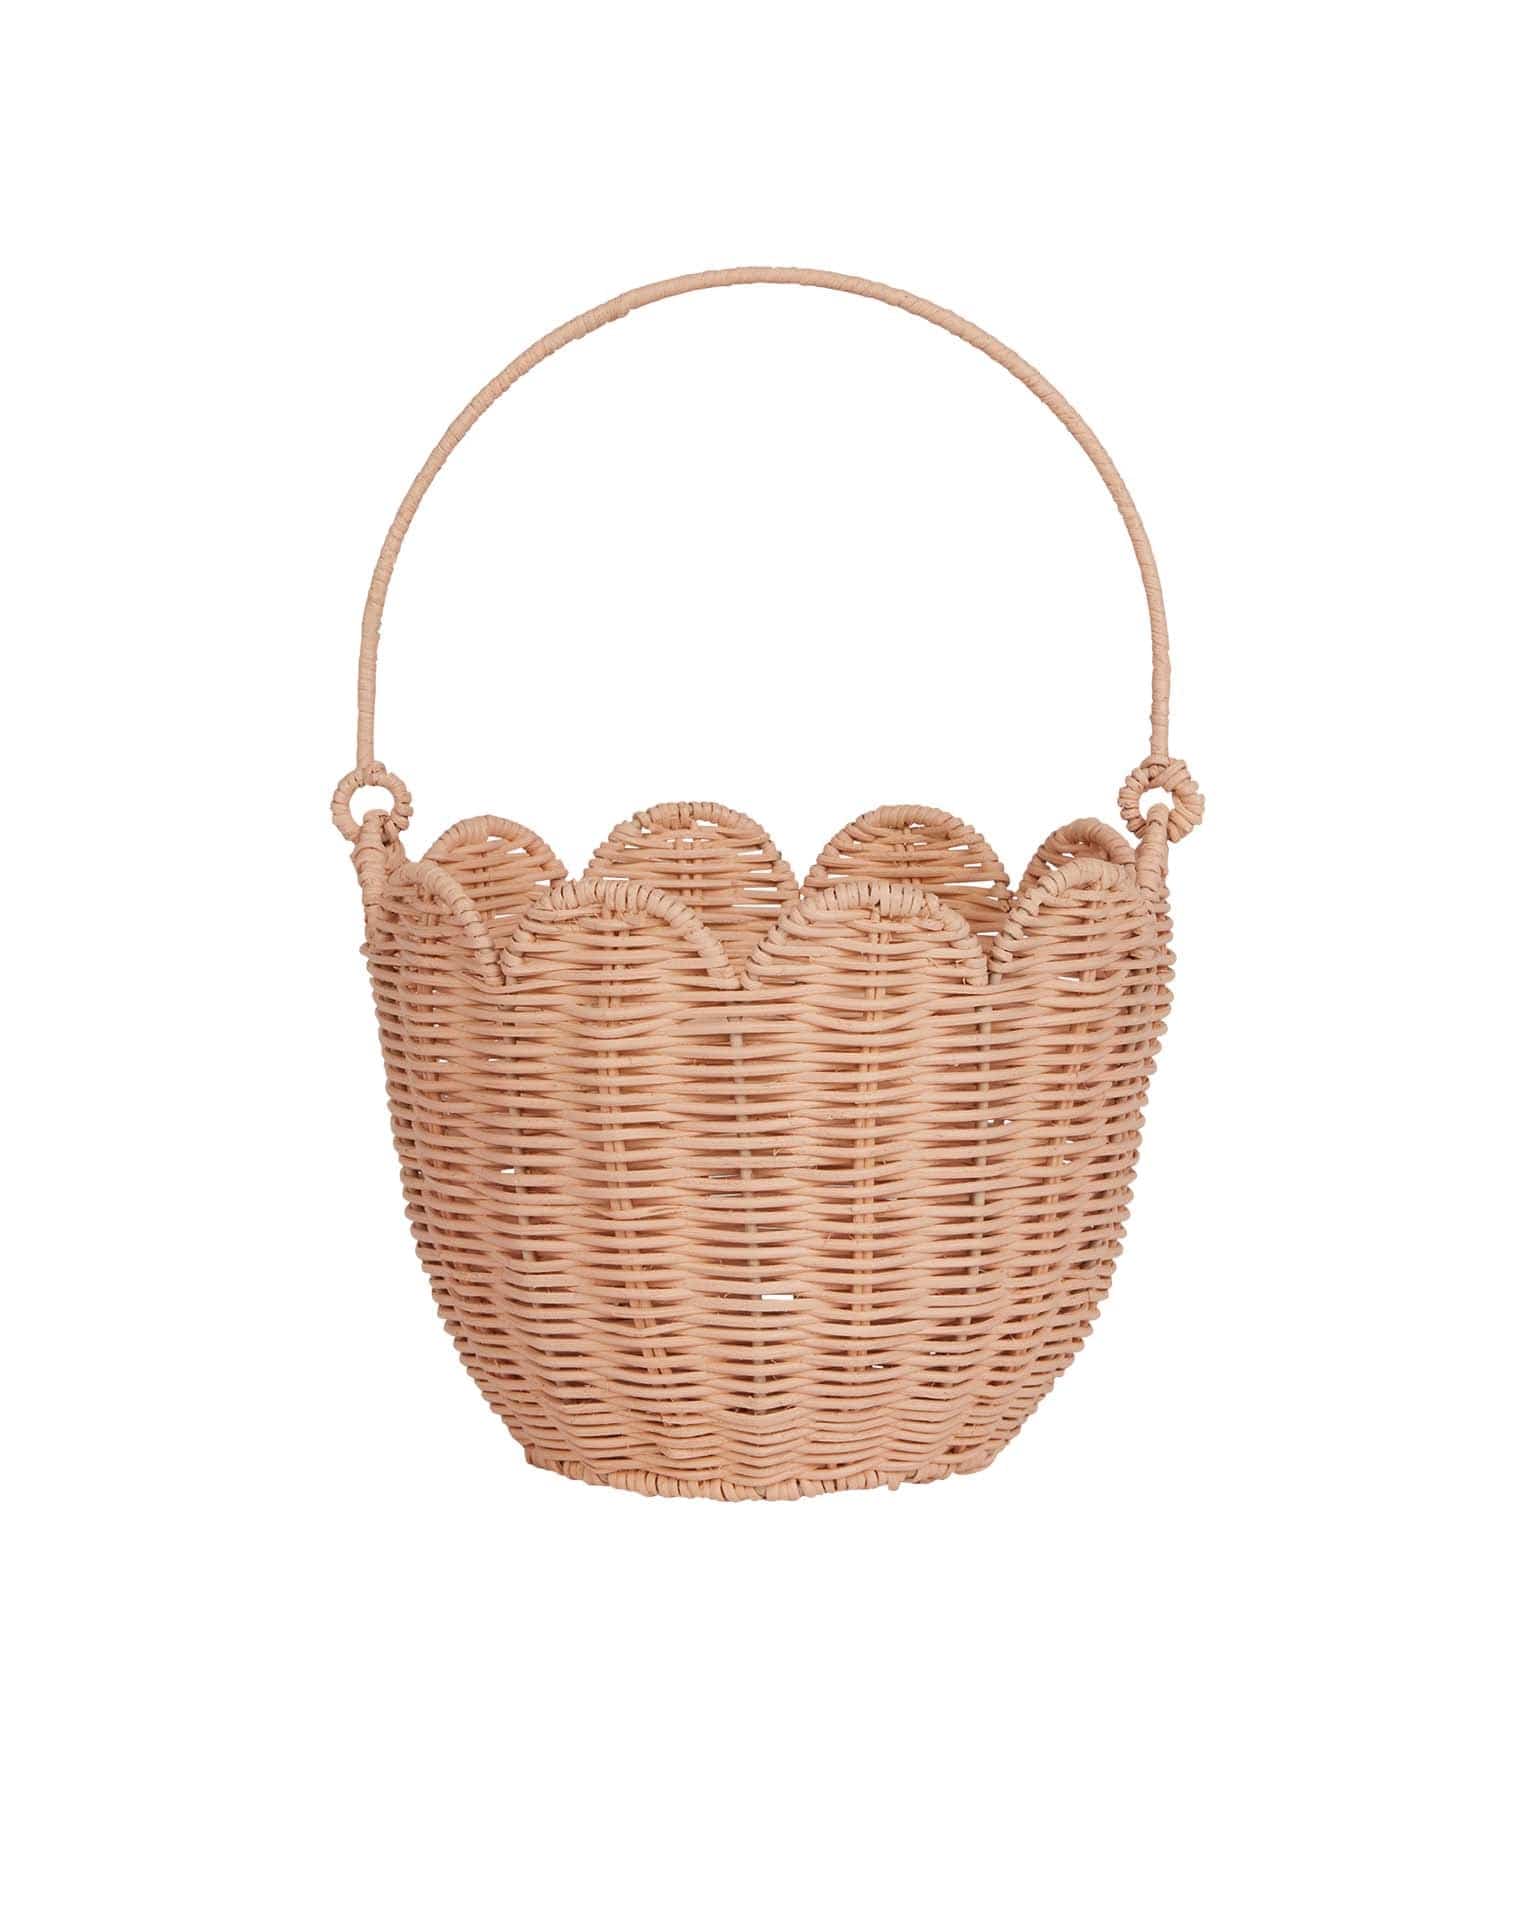 http://www.boutiquelittle.com/cdn/shop/files/little-olli-ella-rattan-tulip-carry-basket-in-seashell-pink-46641208525092.jpg?v=1707172451